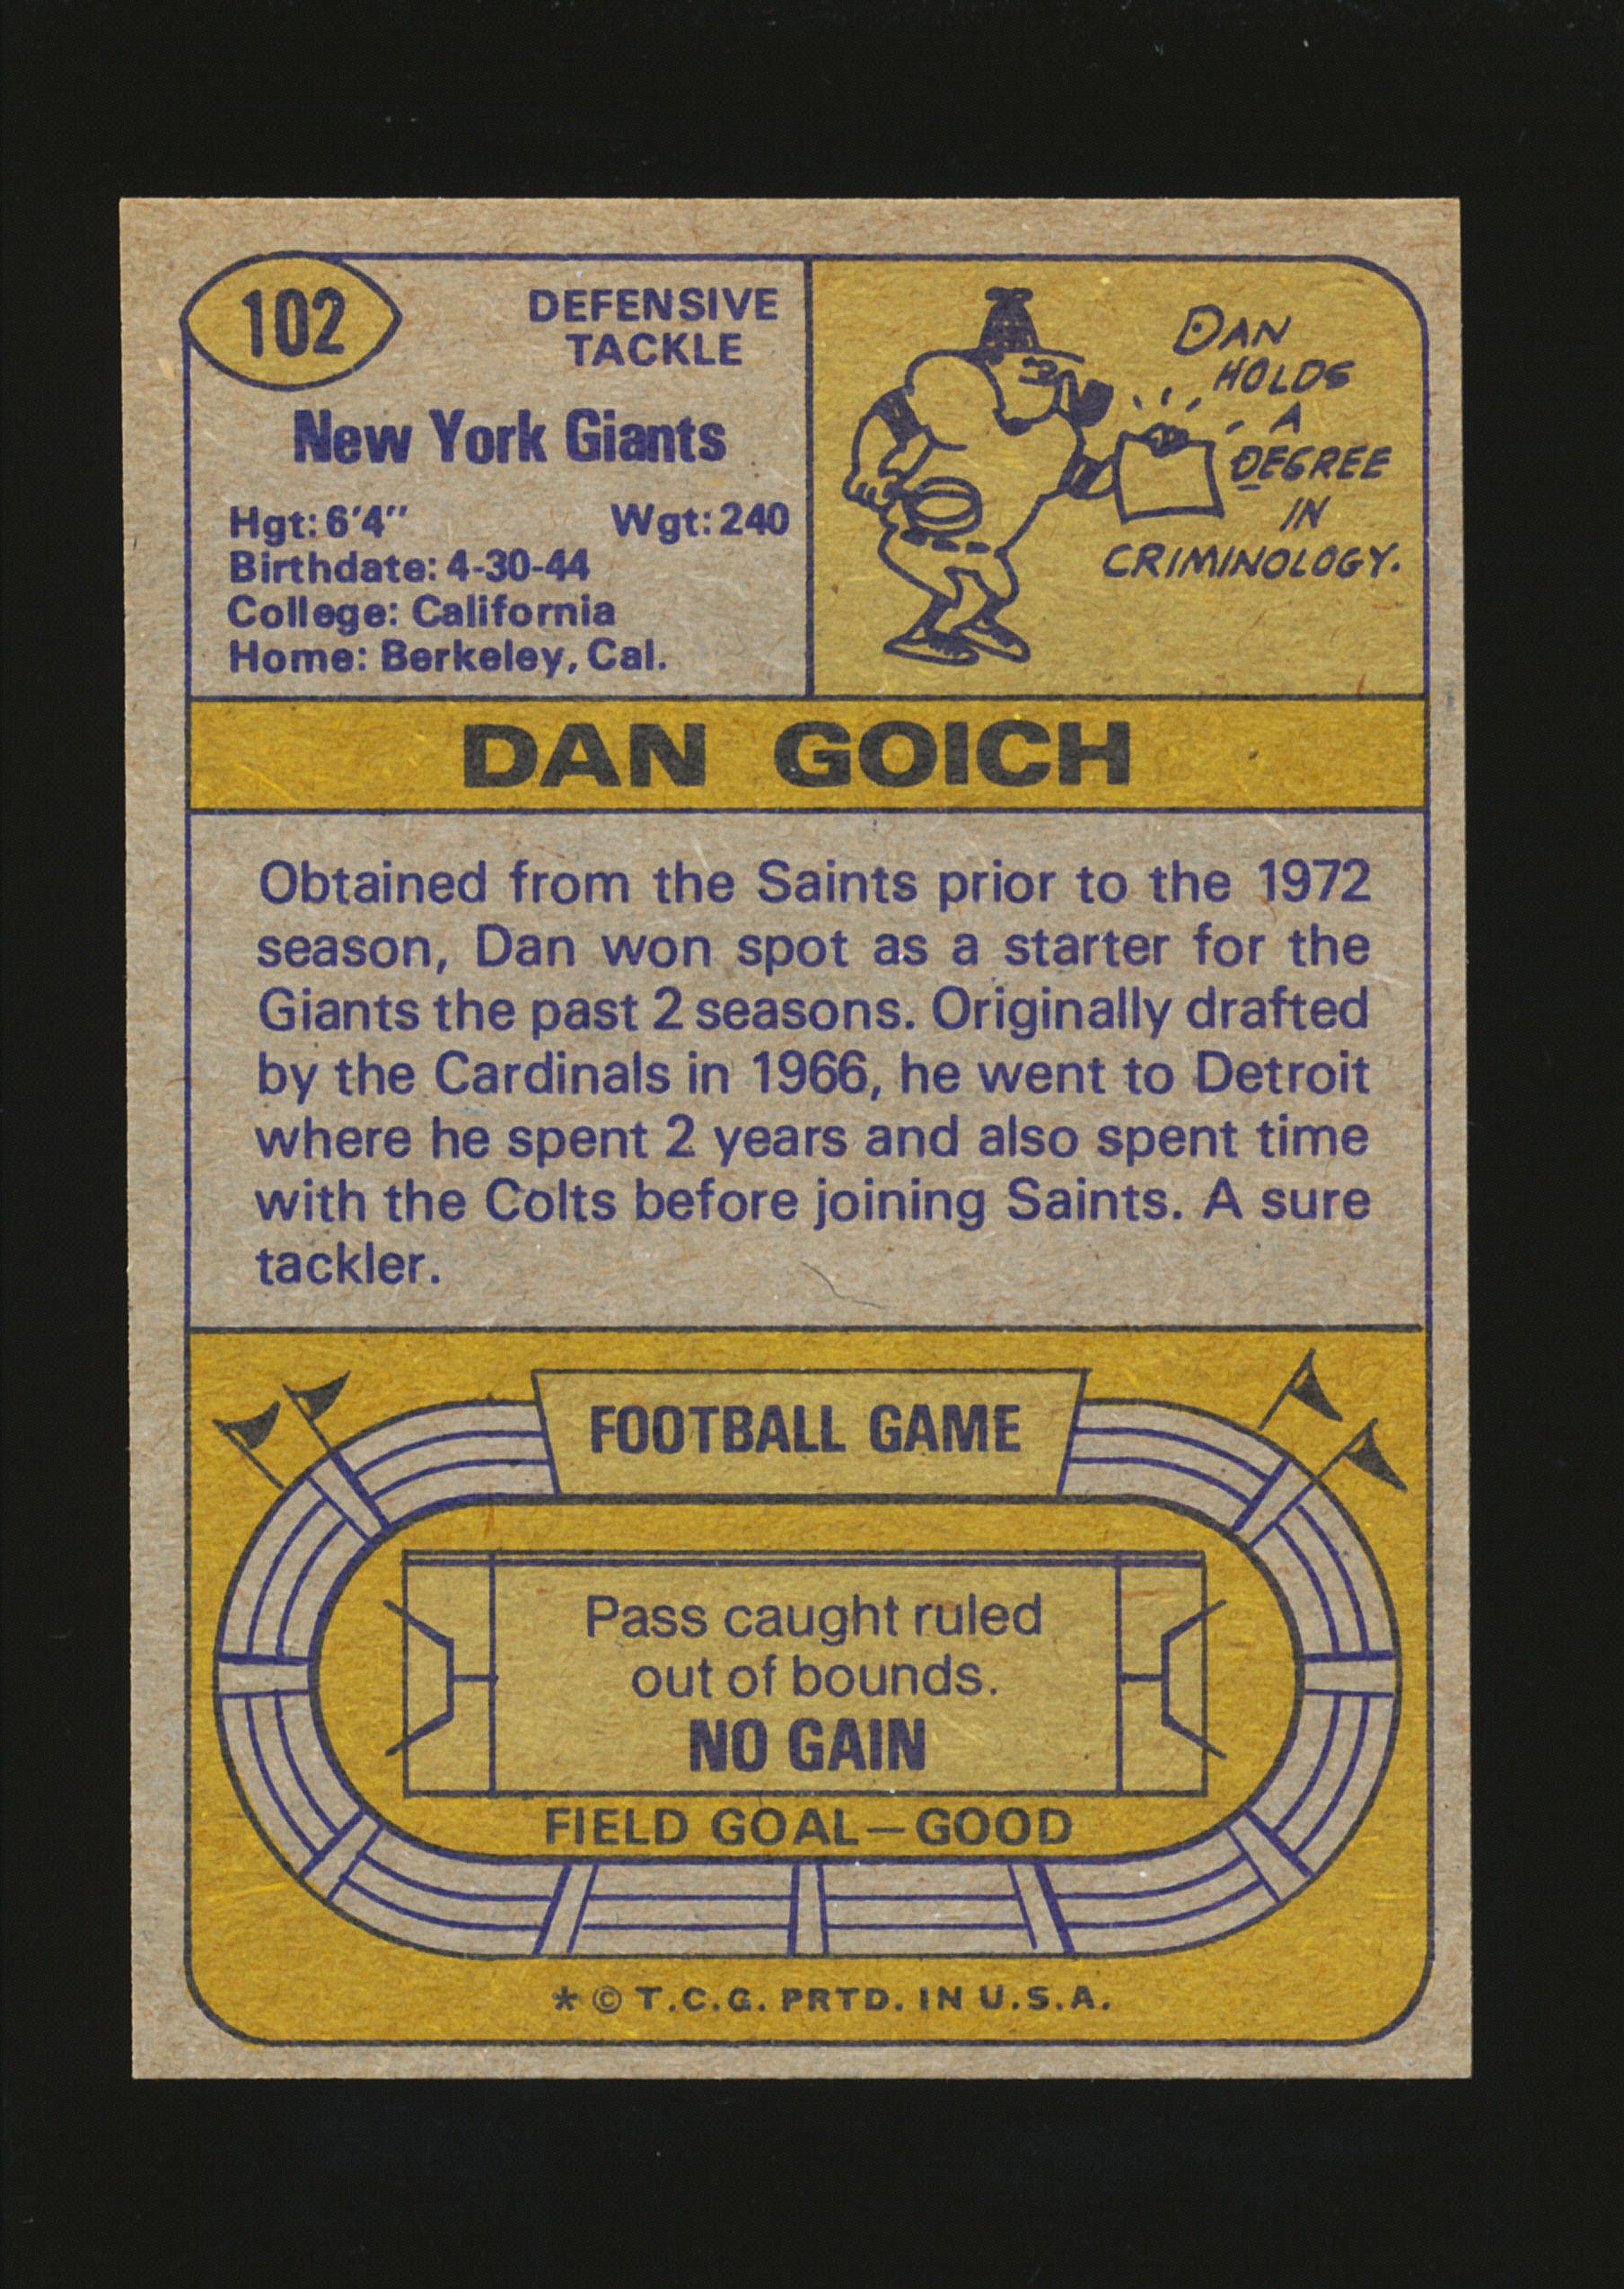 1974 Topps Football Card #102 Dan Goich New York Giants. After Football Dan